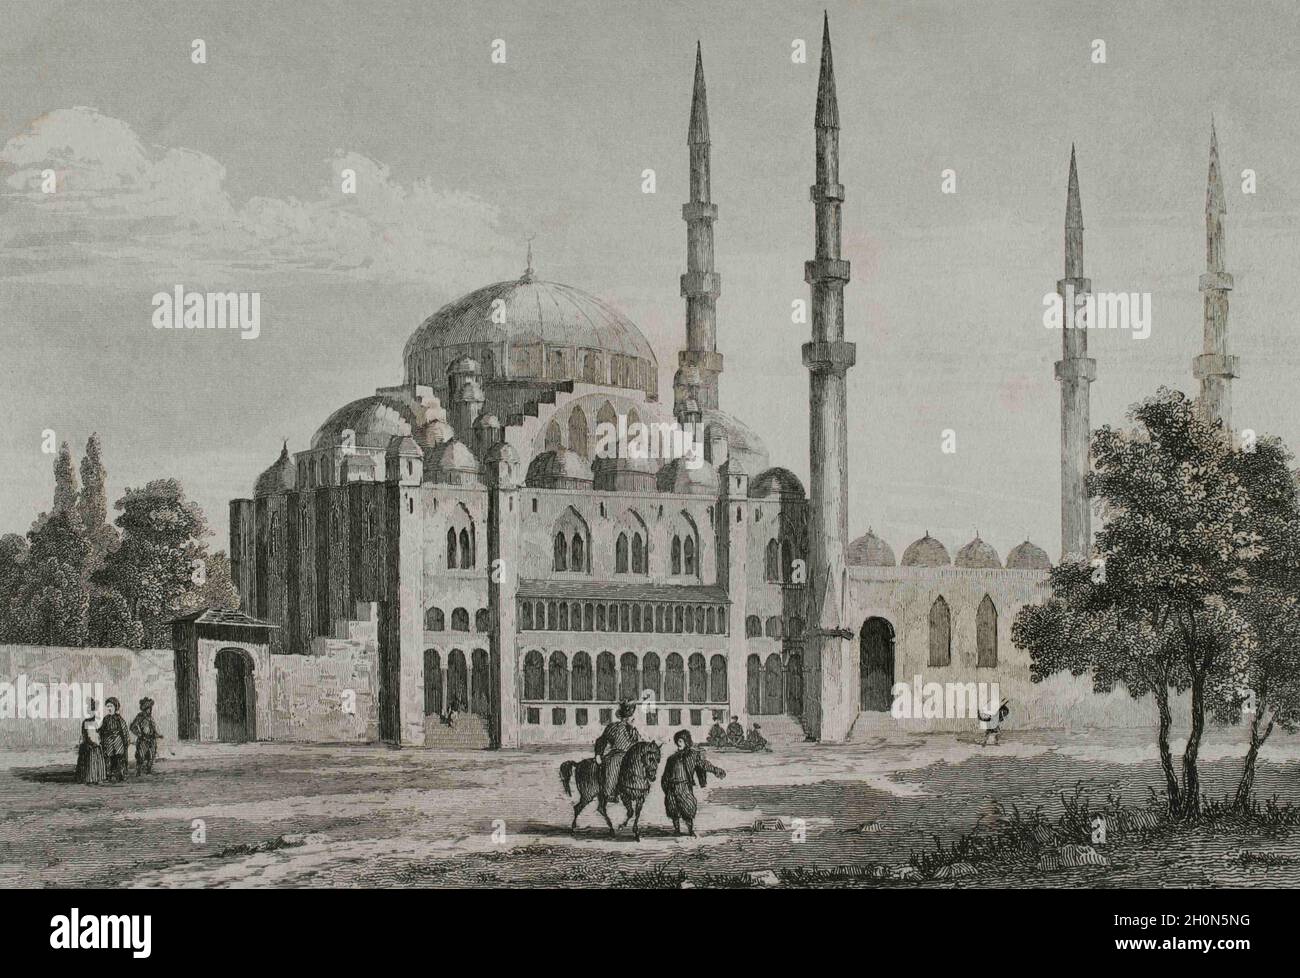 Impero Ottomano. Turchia. Costantinopoli (oggi Istanbul). La Moschea di Suleymaniye (1550-1557). E 'stato commissionato da Suleyman il magnifico e il design Foto Stock